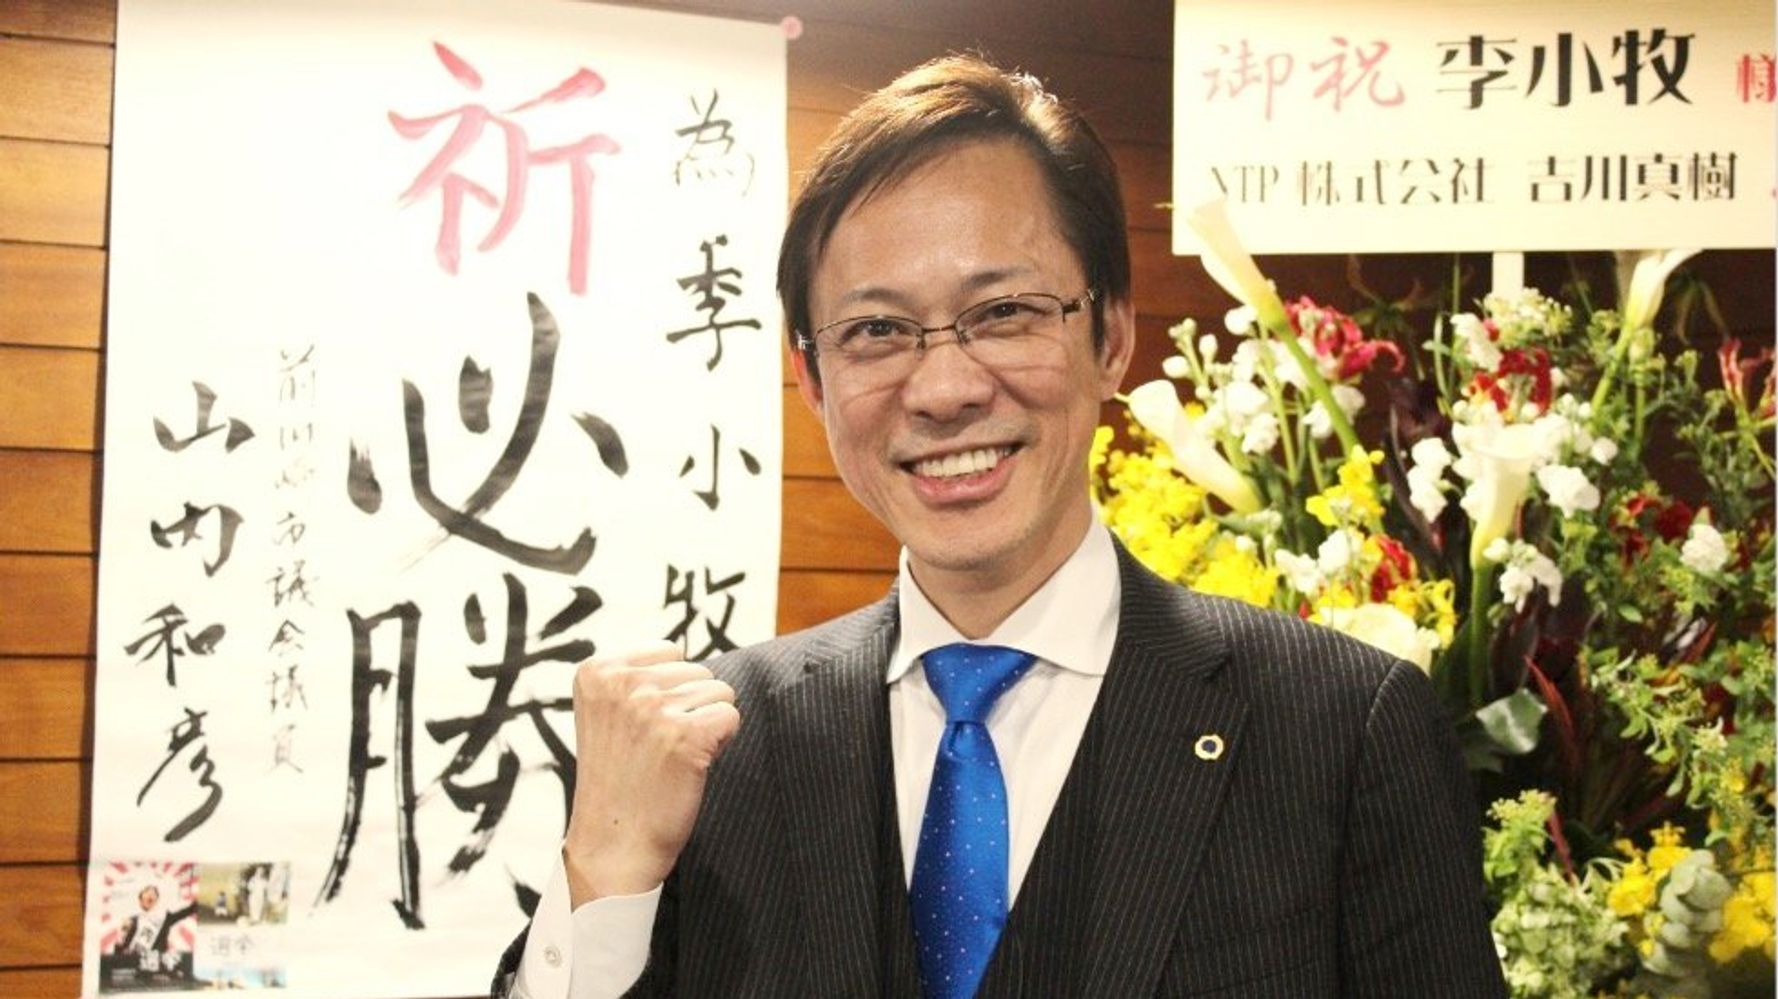 元中国人 李小牧さんは日本の民主主義に夢を見る 歌舞伎町案内人 が2度目の選挙に挑む理由 ハフポスト